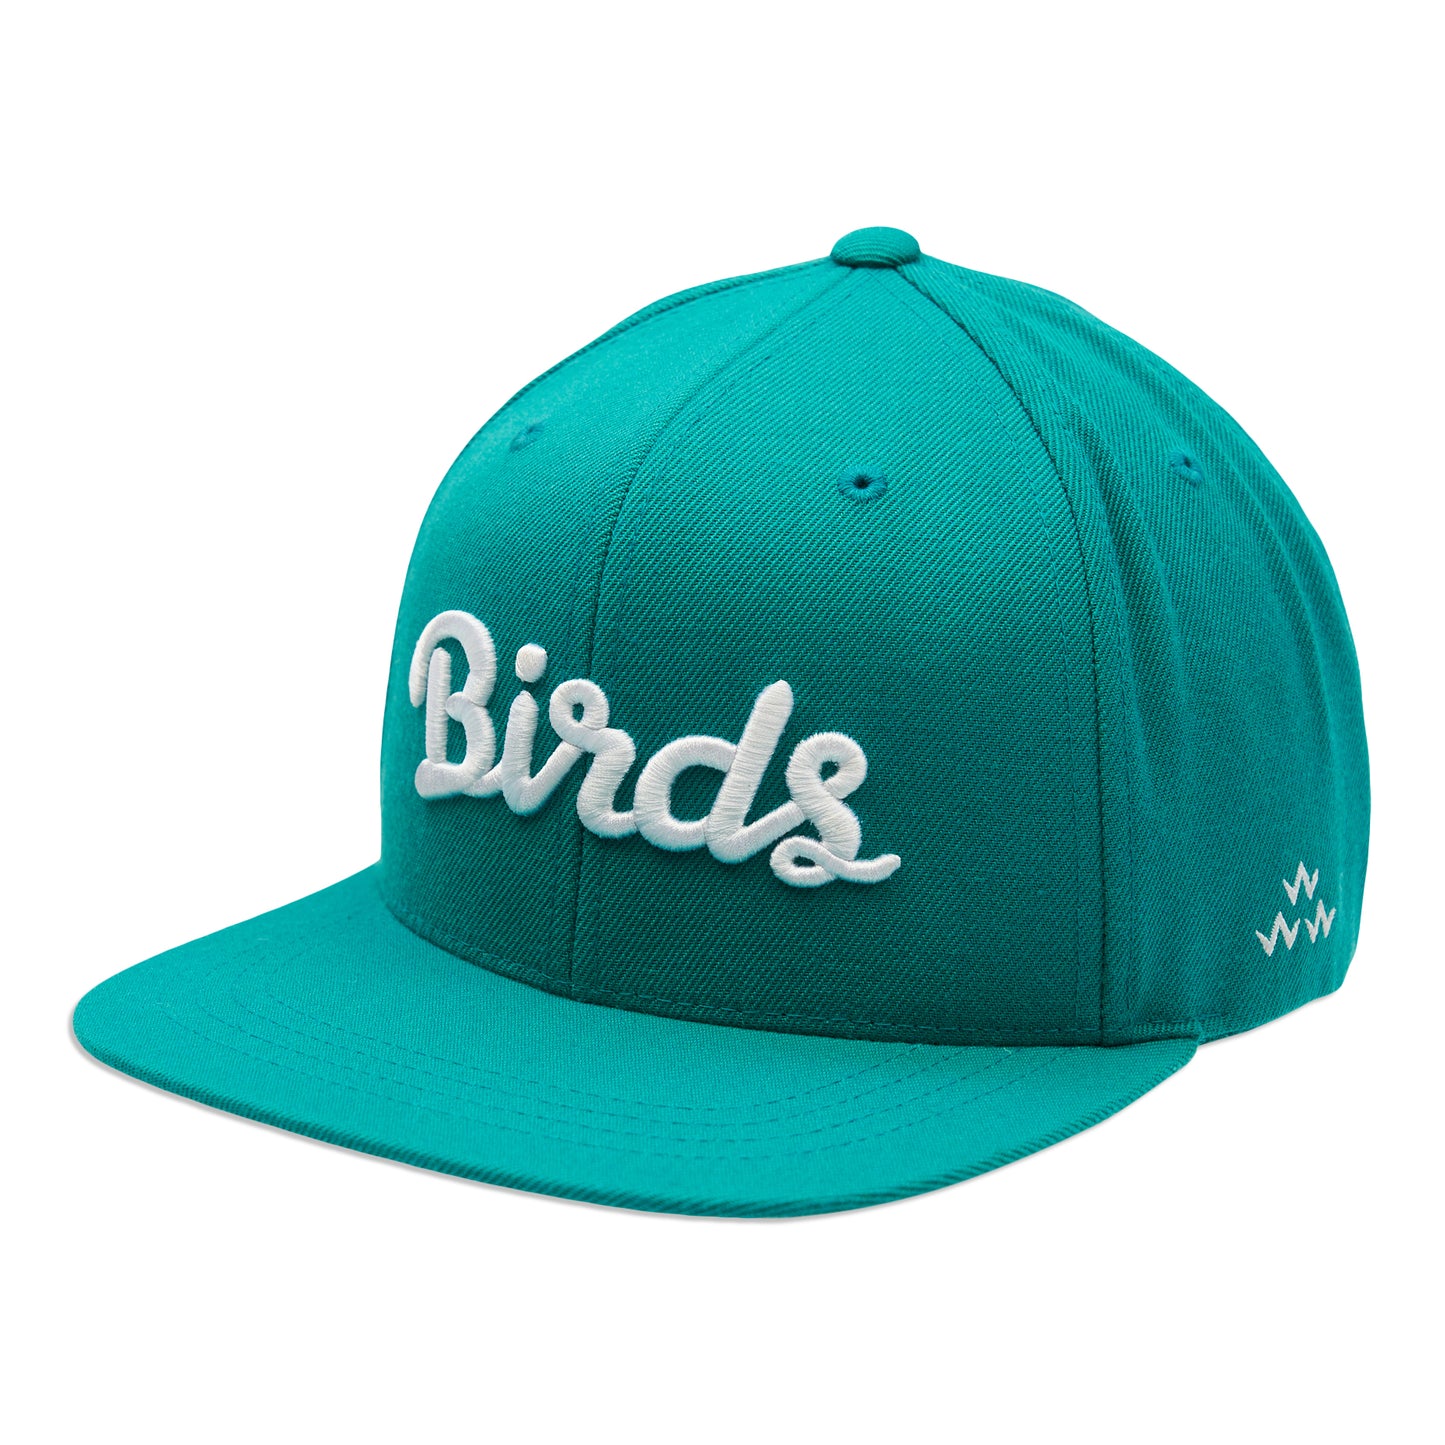 birds-of-condor-aqua-blue-green-flat-peak-snapback-hat-ront